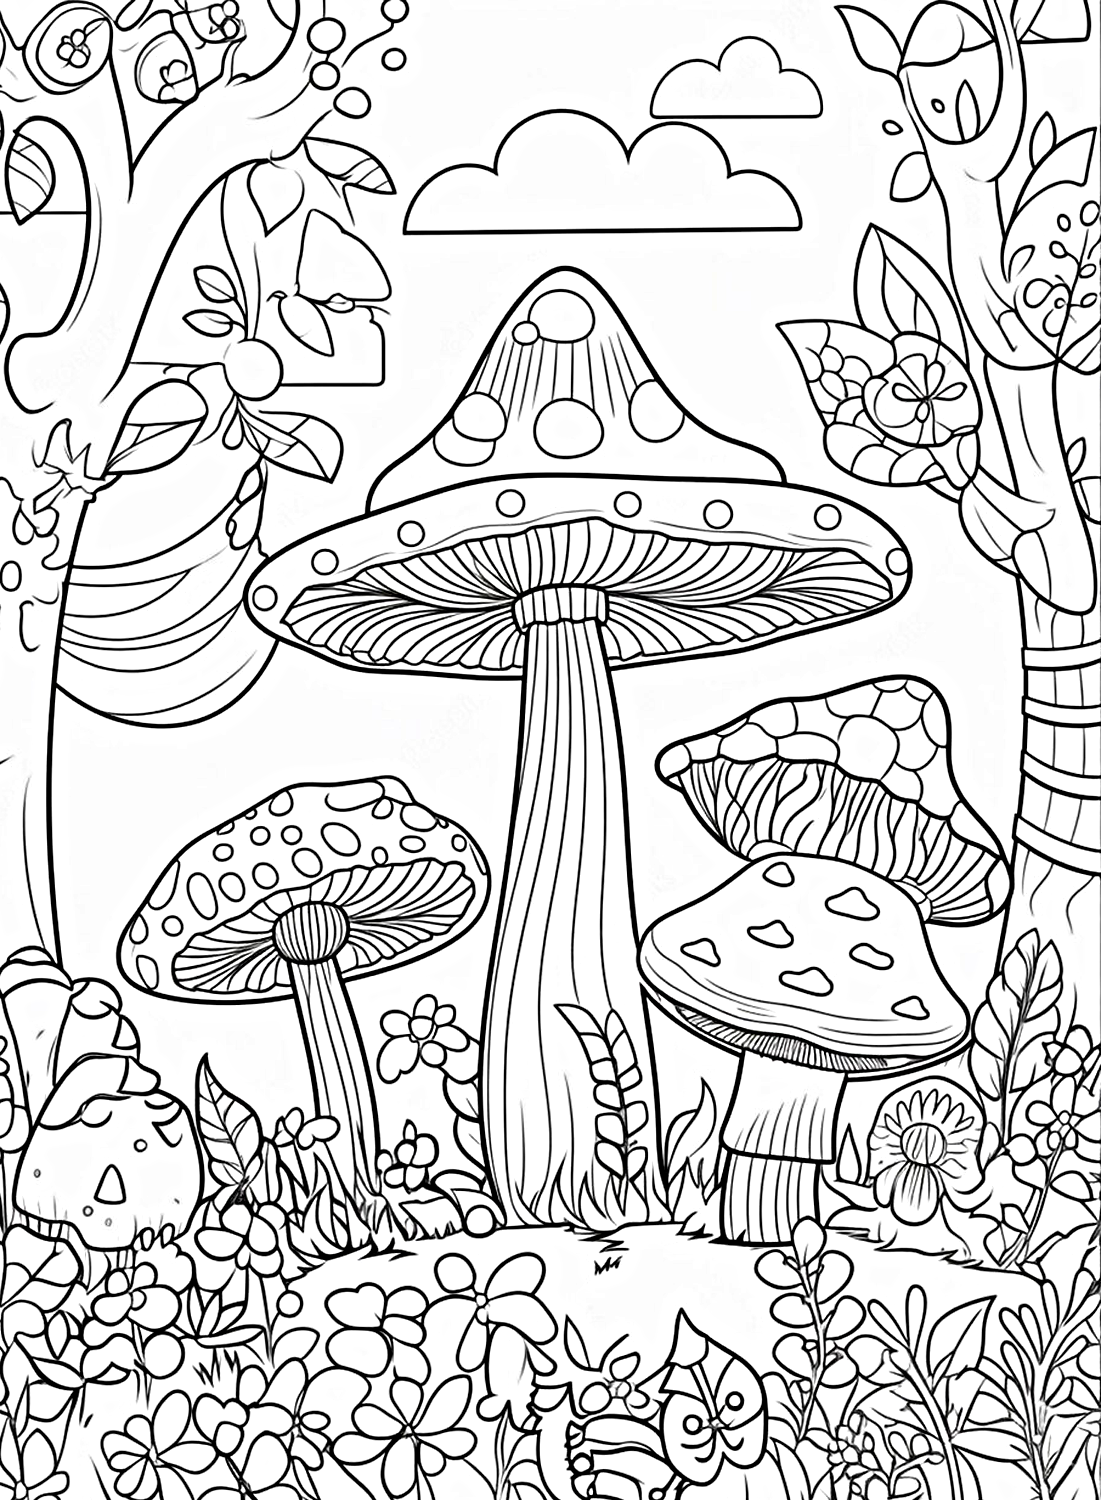 许多高大的蘑菇着色图片来自蘑菇